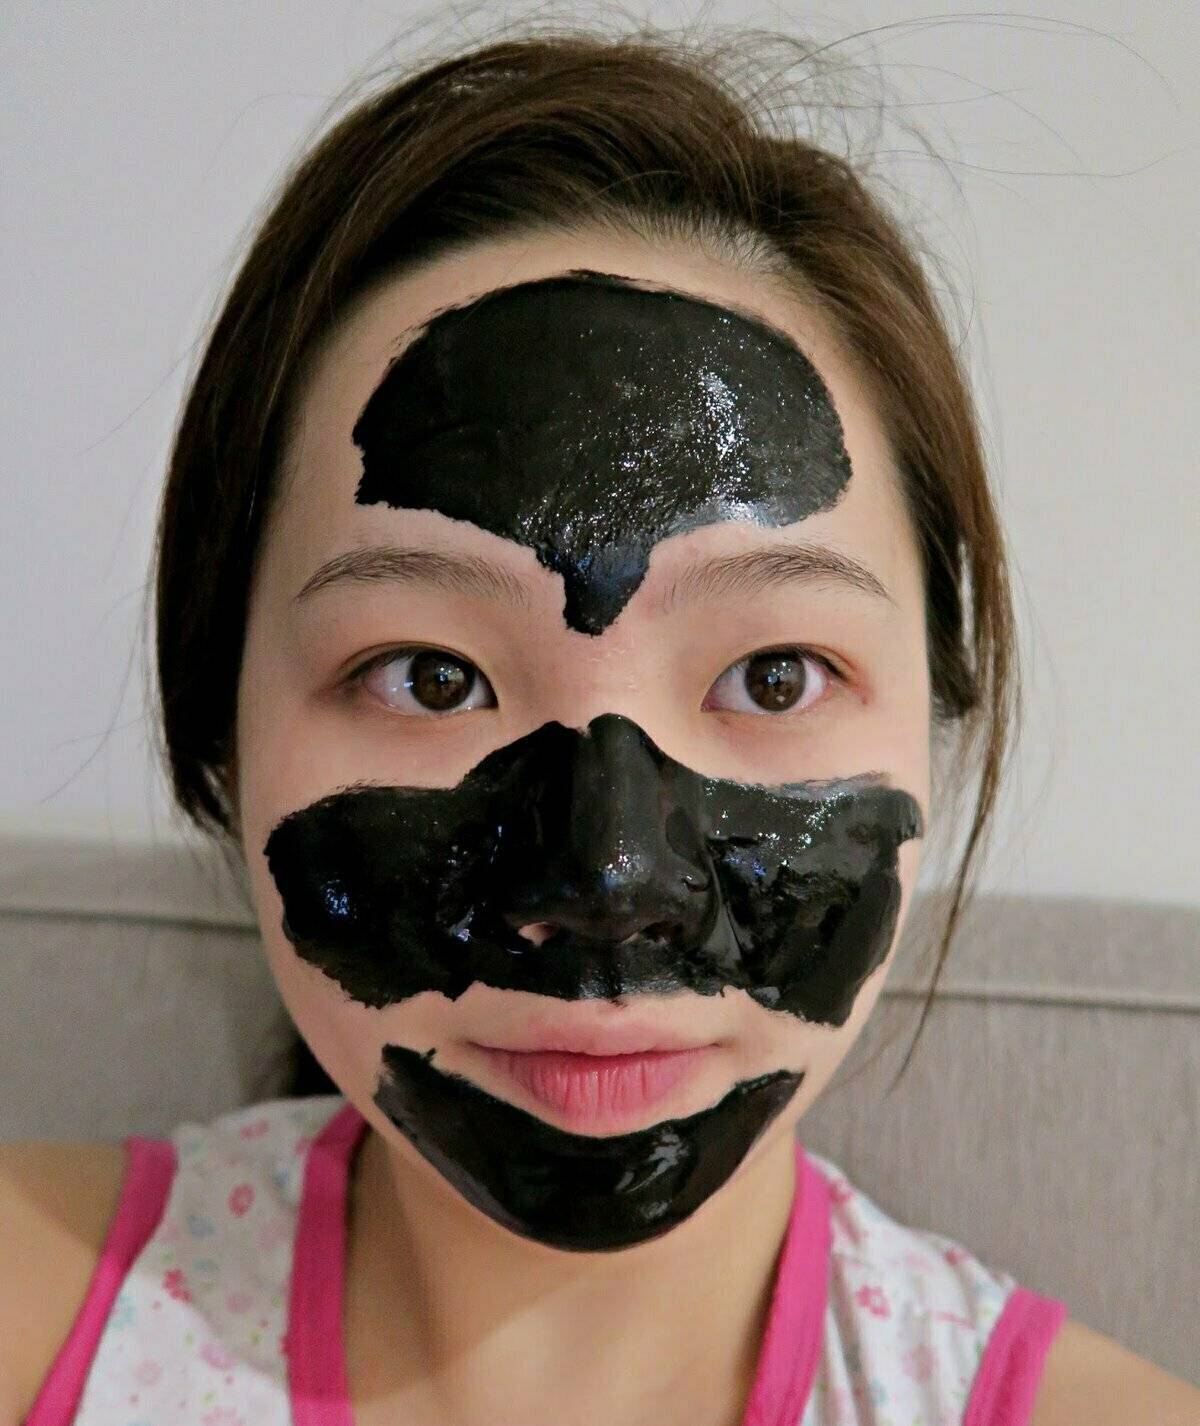 Как правильно ✔ наносить маску на лицо ▶ правила использования в домашних условиях